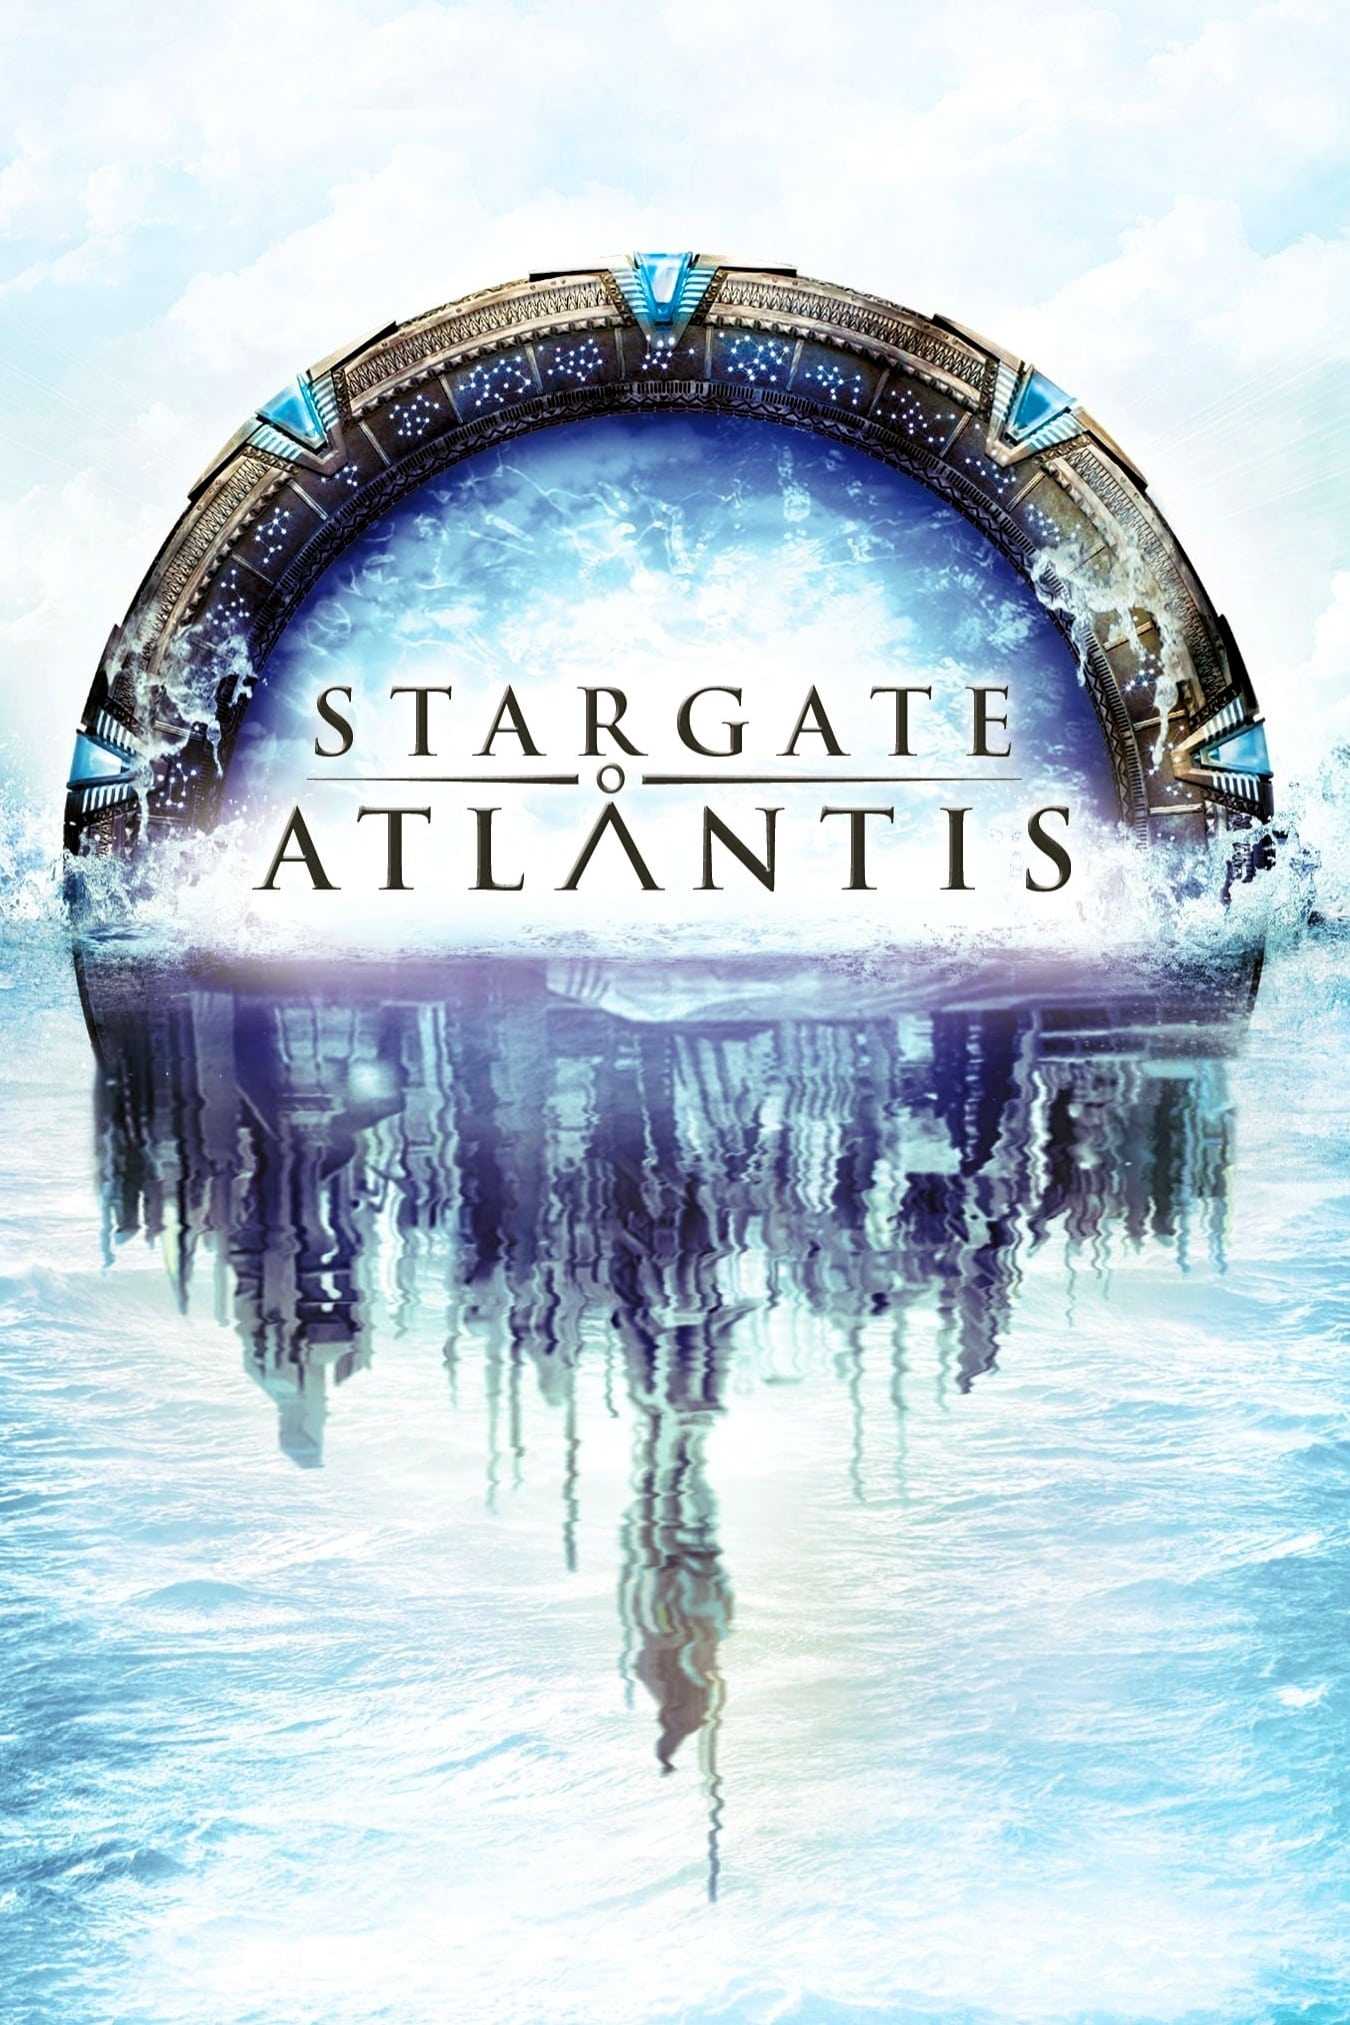 Stargate Atlantis in streaming